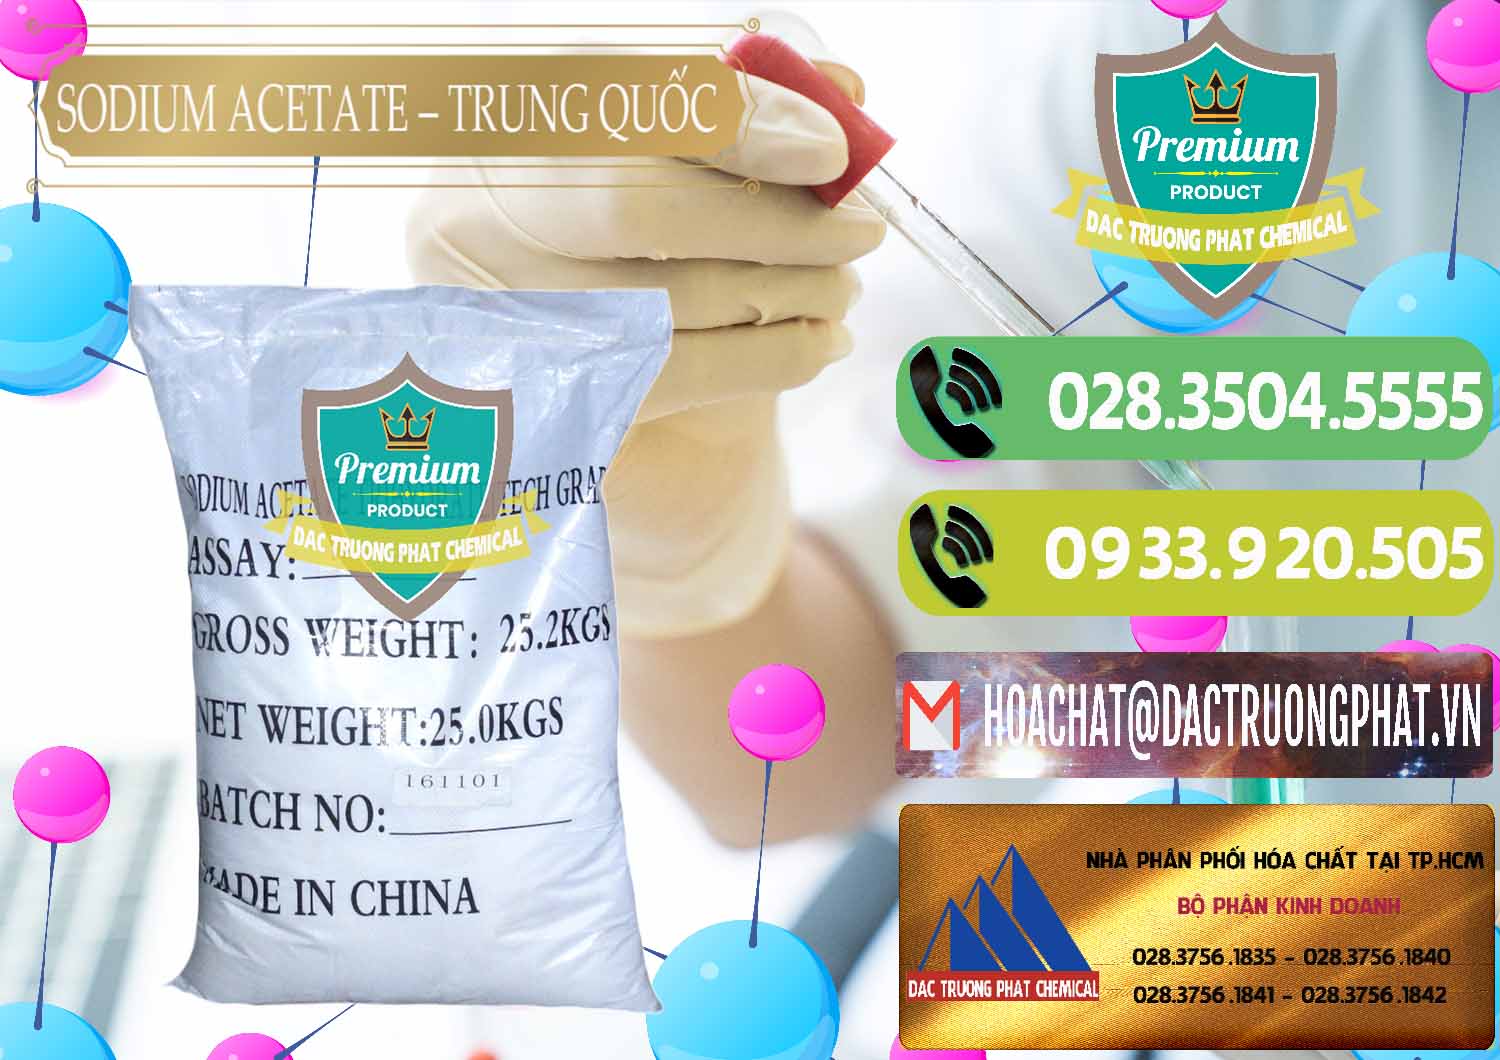 Cty chuyên cung cấp _ bán Sodium Acetate - Natri Acetate Trung Quốc China - 0134 - Nơi cung cấp & phân phối hóa chất tại TP.HCM - hoachatmientay.vn